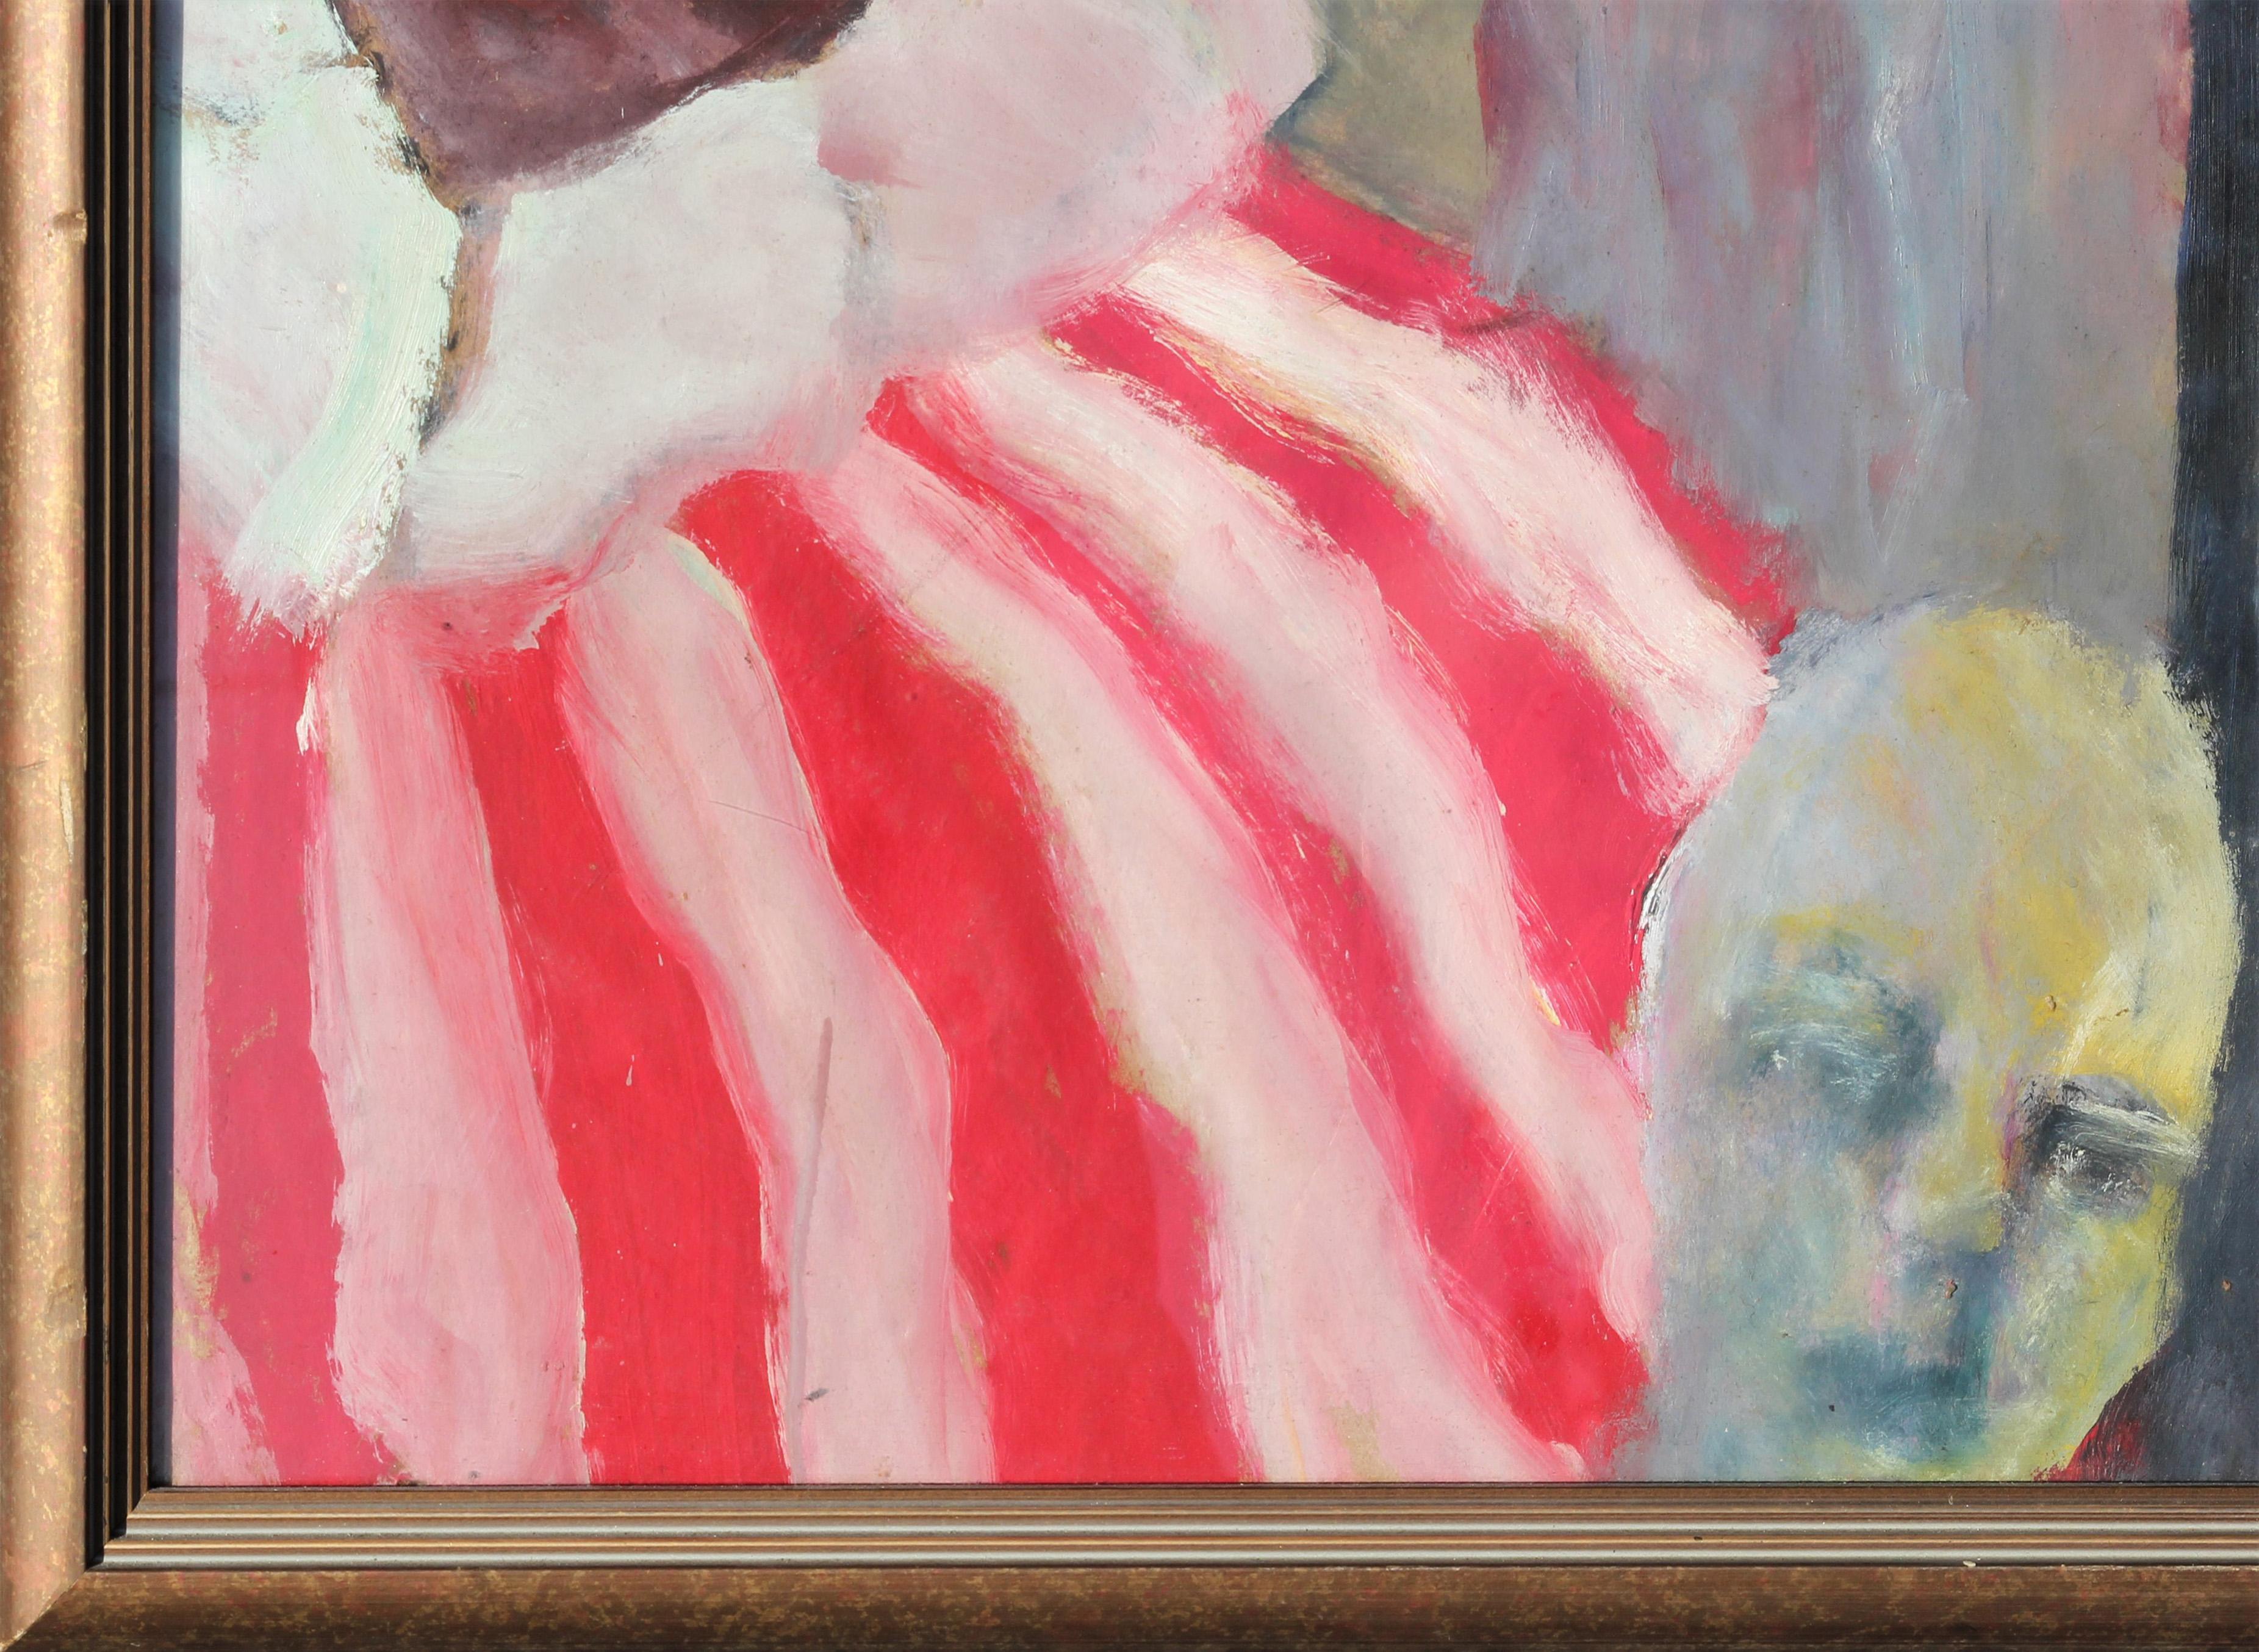 Surreales abstraktes expressionistisches Gemälde einer Gruppe von Clowns im Stil des belgischen Malers James Ensor. Das Werk, das das Makabre mit dem Spielerischen verbindet, zeigt verzerrte Clowns und andere groteske Figuren. Signiert und datiert